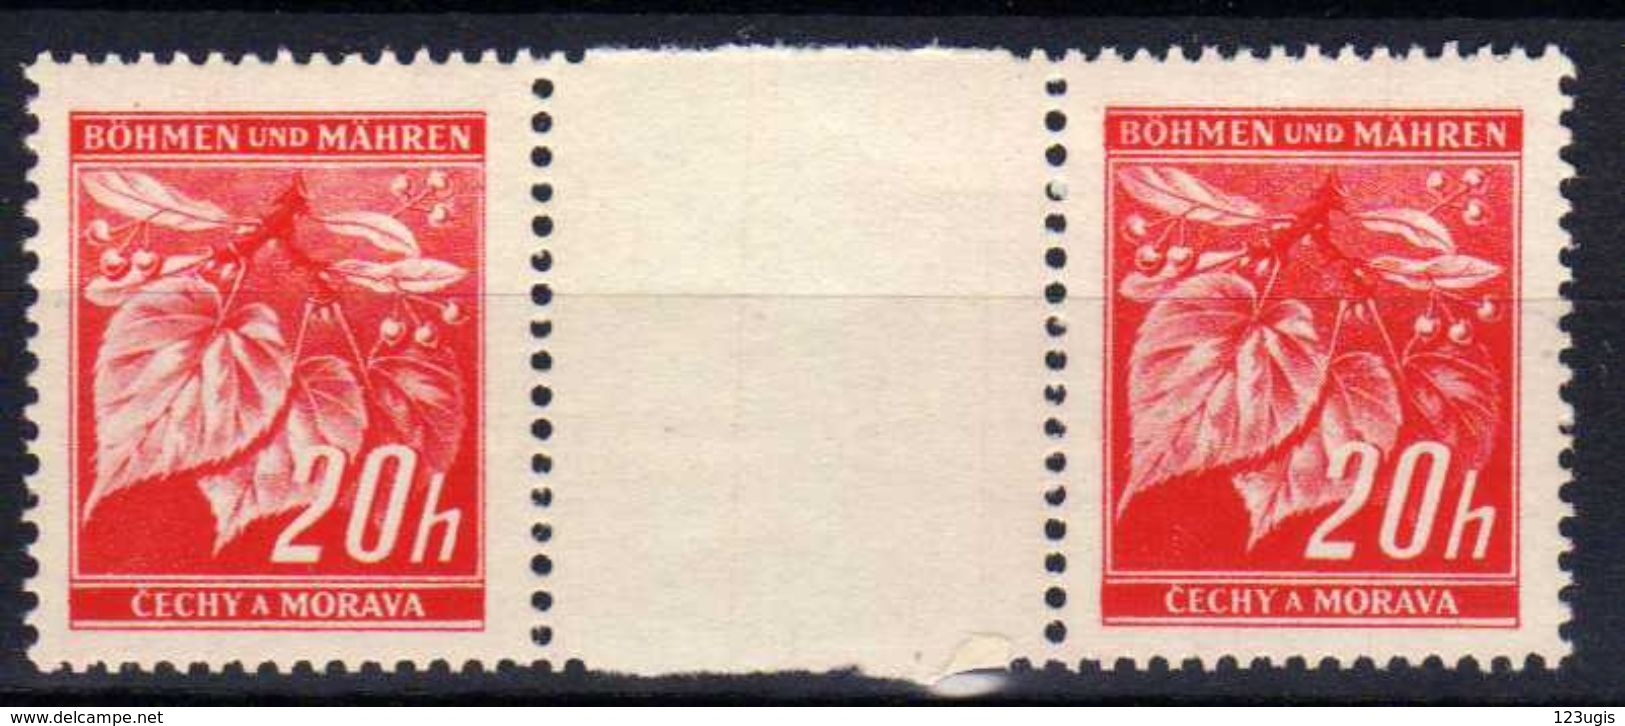 Böhmen Und Mähren 1939 Mi 22 ** Zwischenstegpaare [231113VII] @ - Unused Stamps